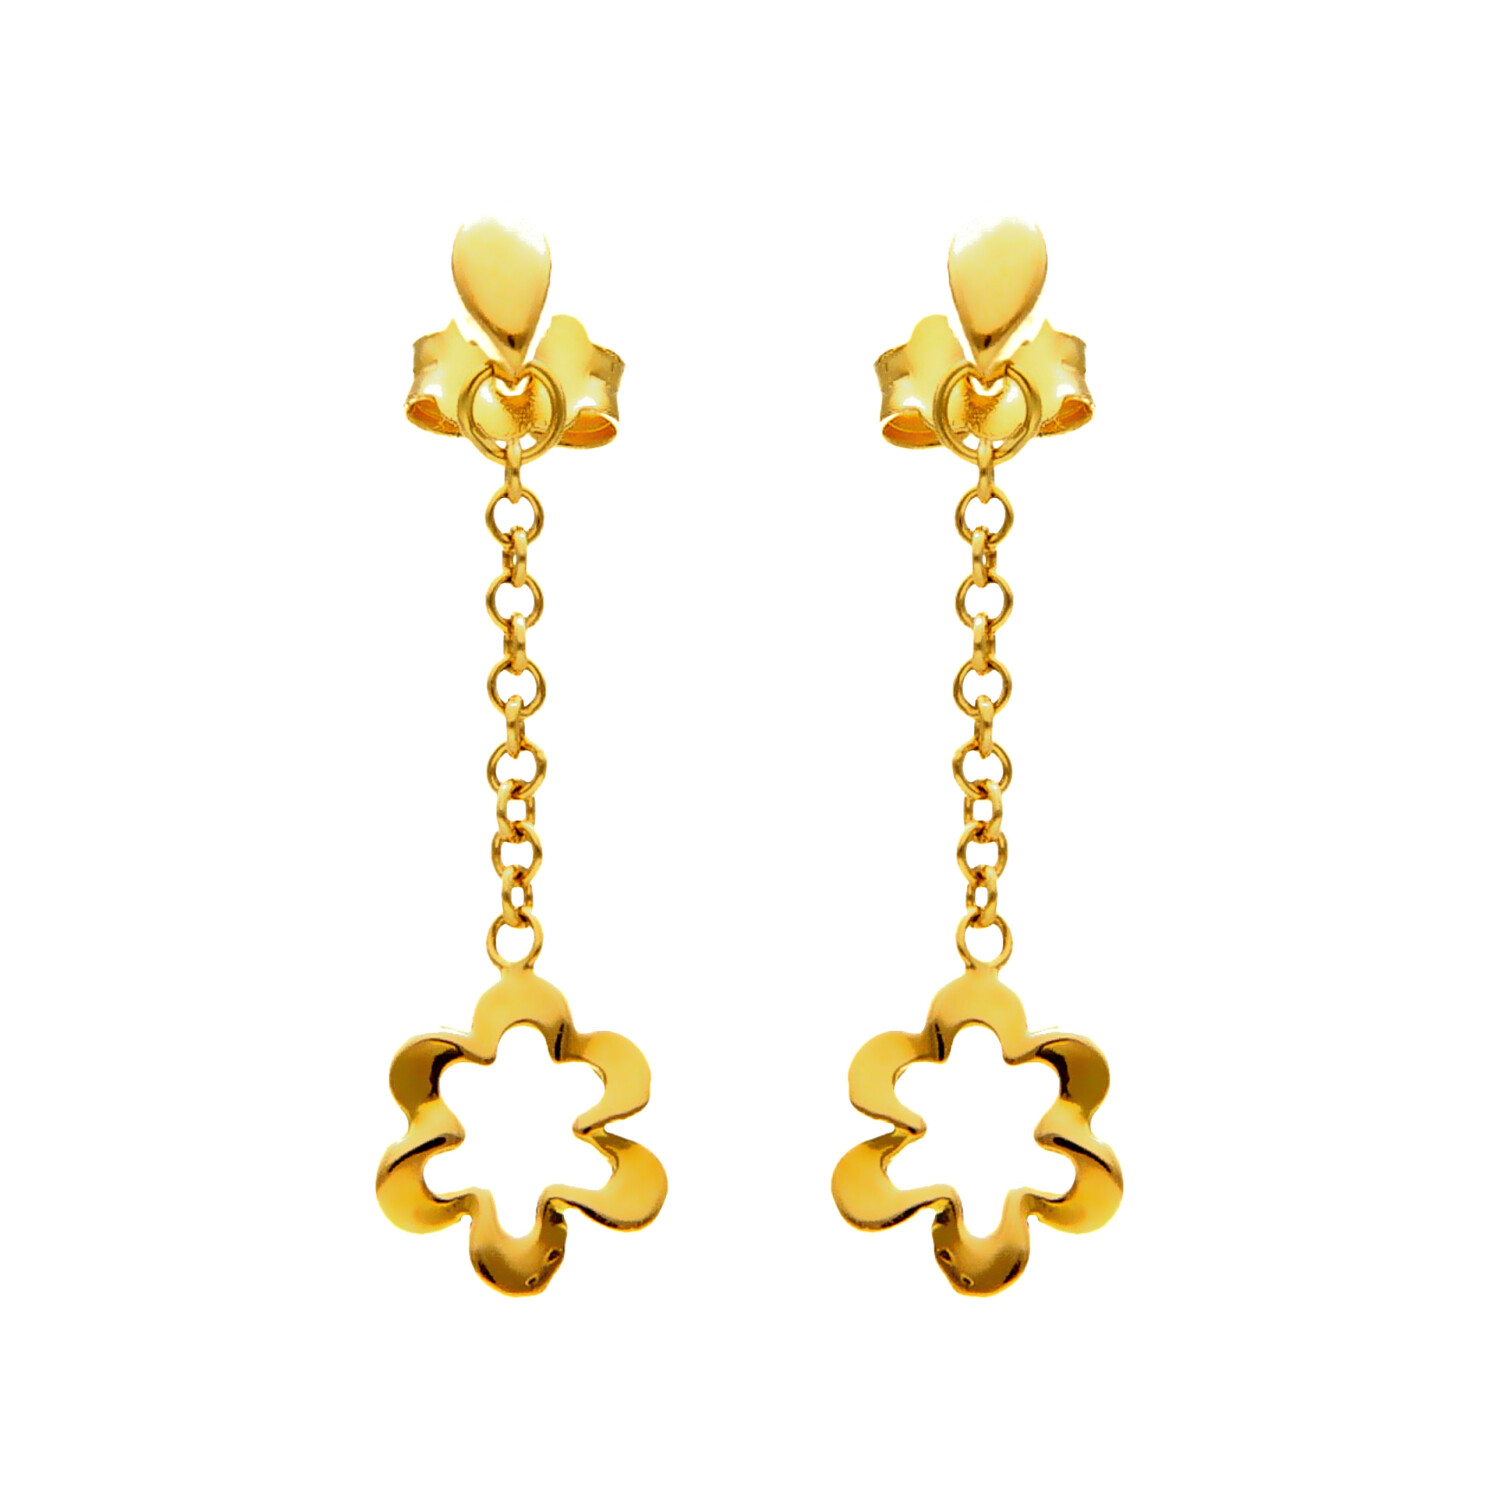 Coppia orecchini pendenti oro giallo con fiore